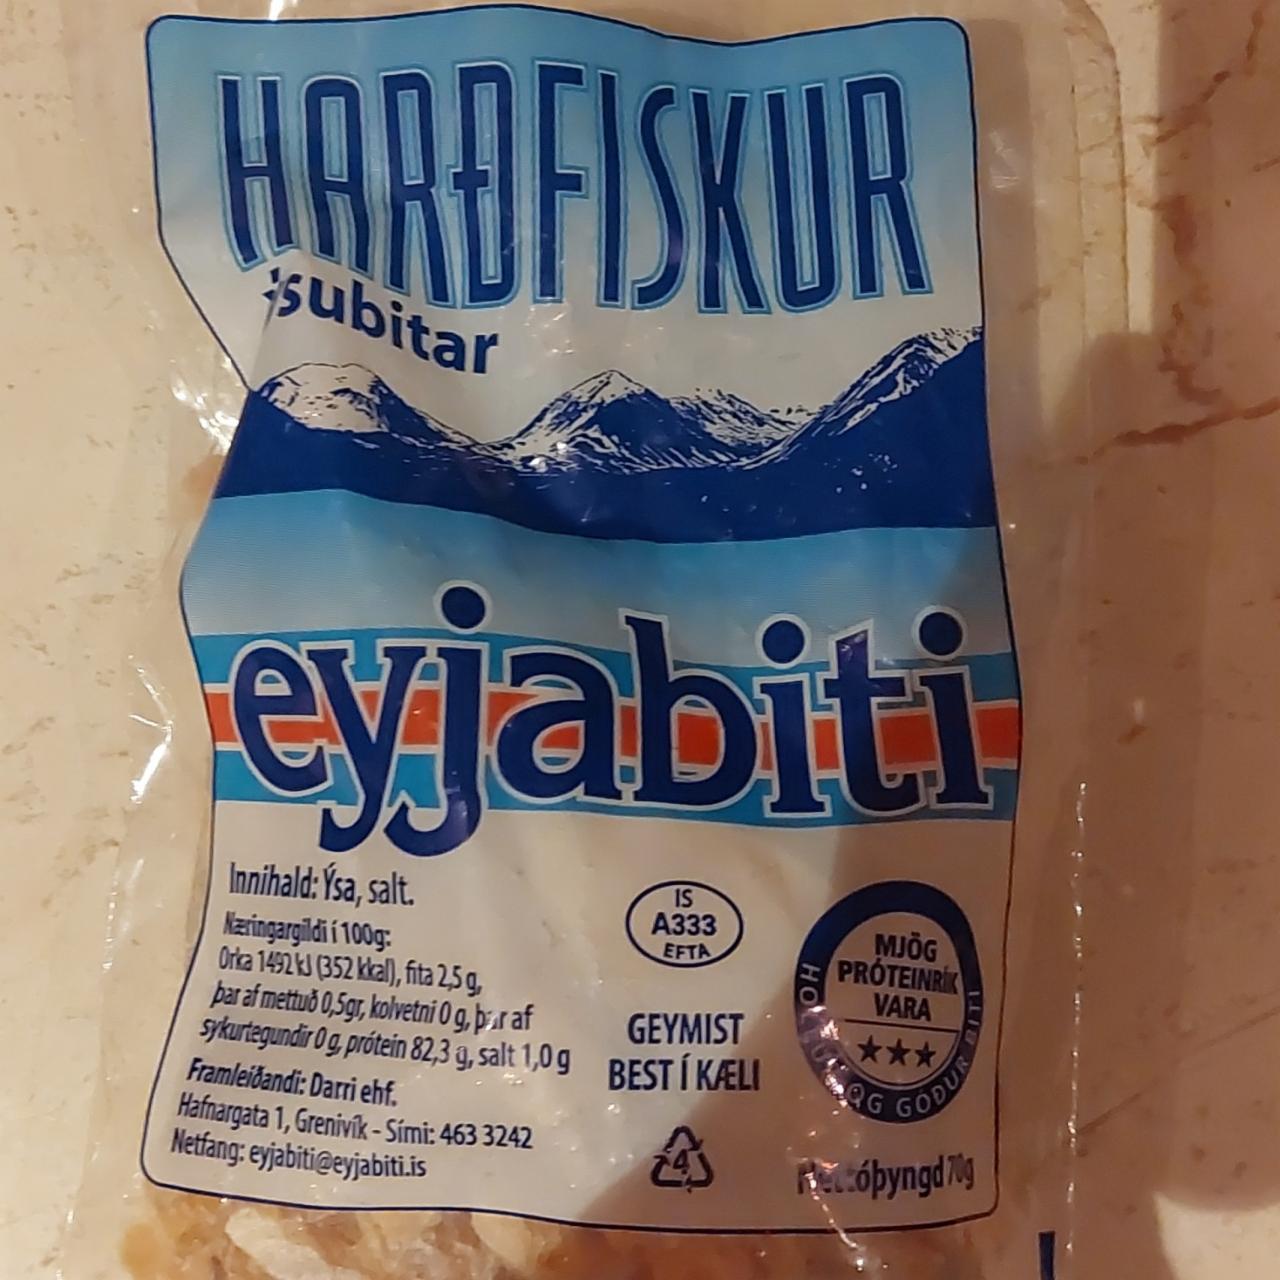 Fotografie - Hardfiskur ýsubitar eyjabiti